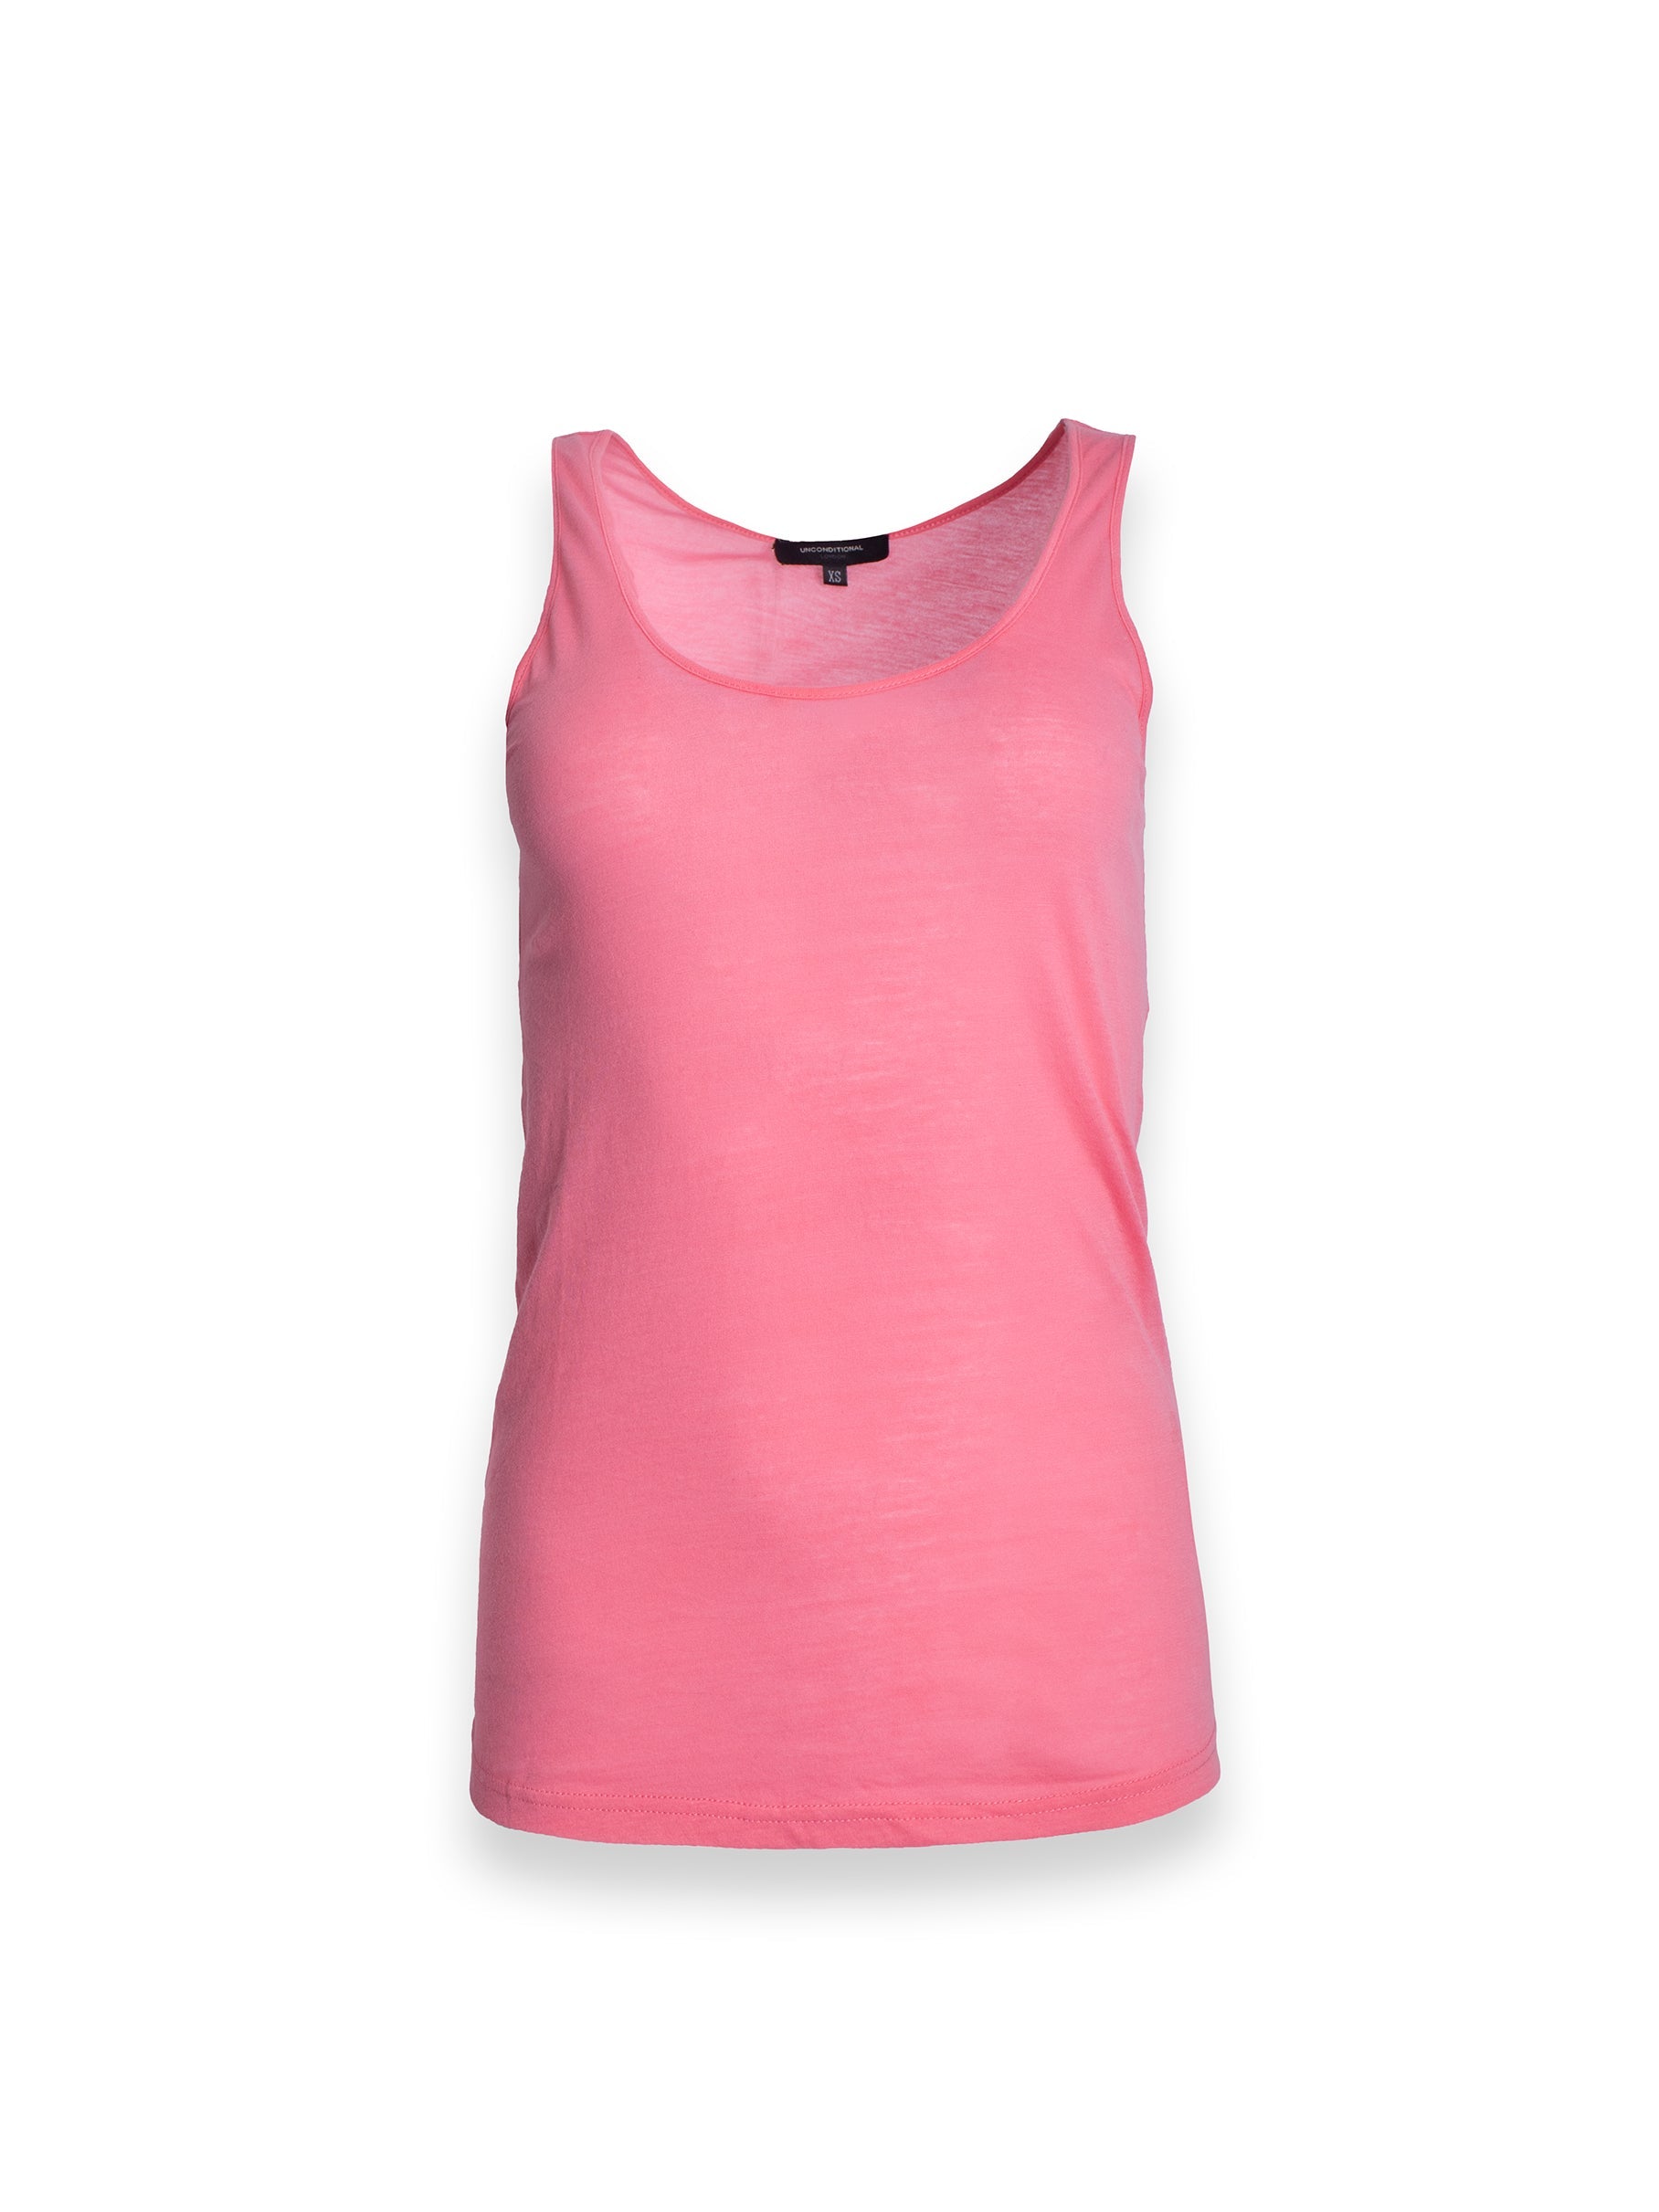 Pink Active Wear Vest Top